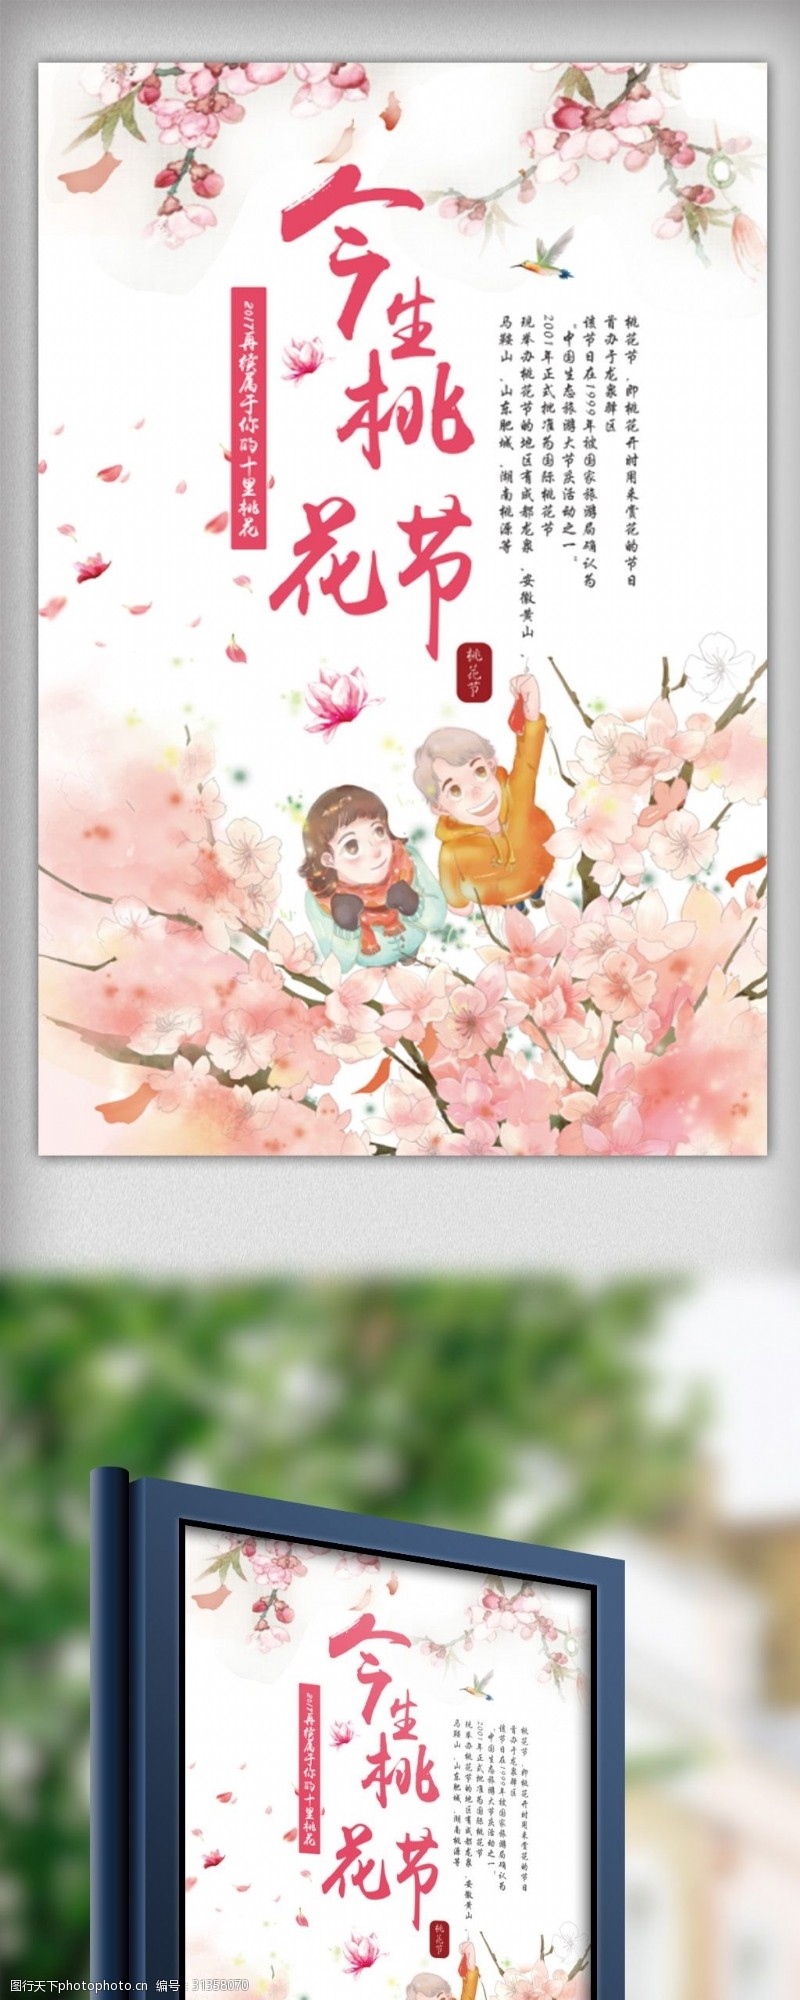 春节旅游浪漫桃花节旅游宣传海报